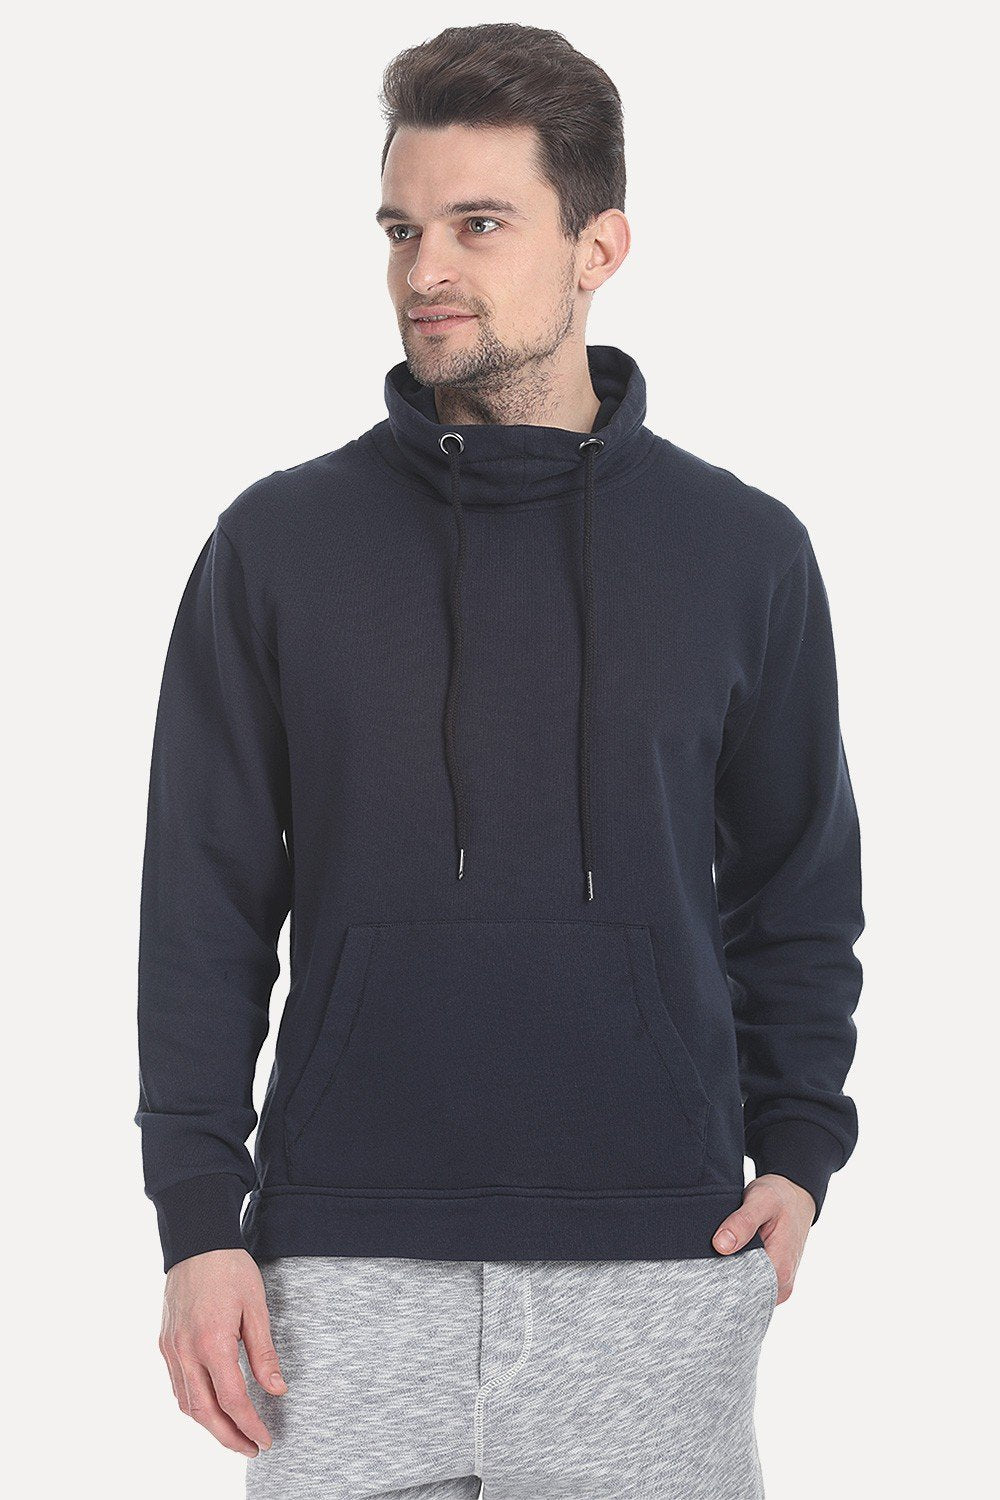 Buy Online Navy color Neck Sweatshirt for Men - Zobello